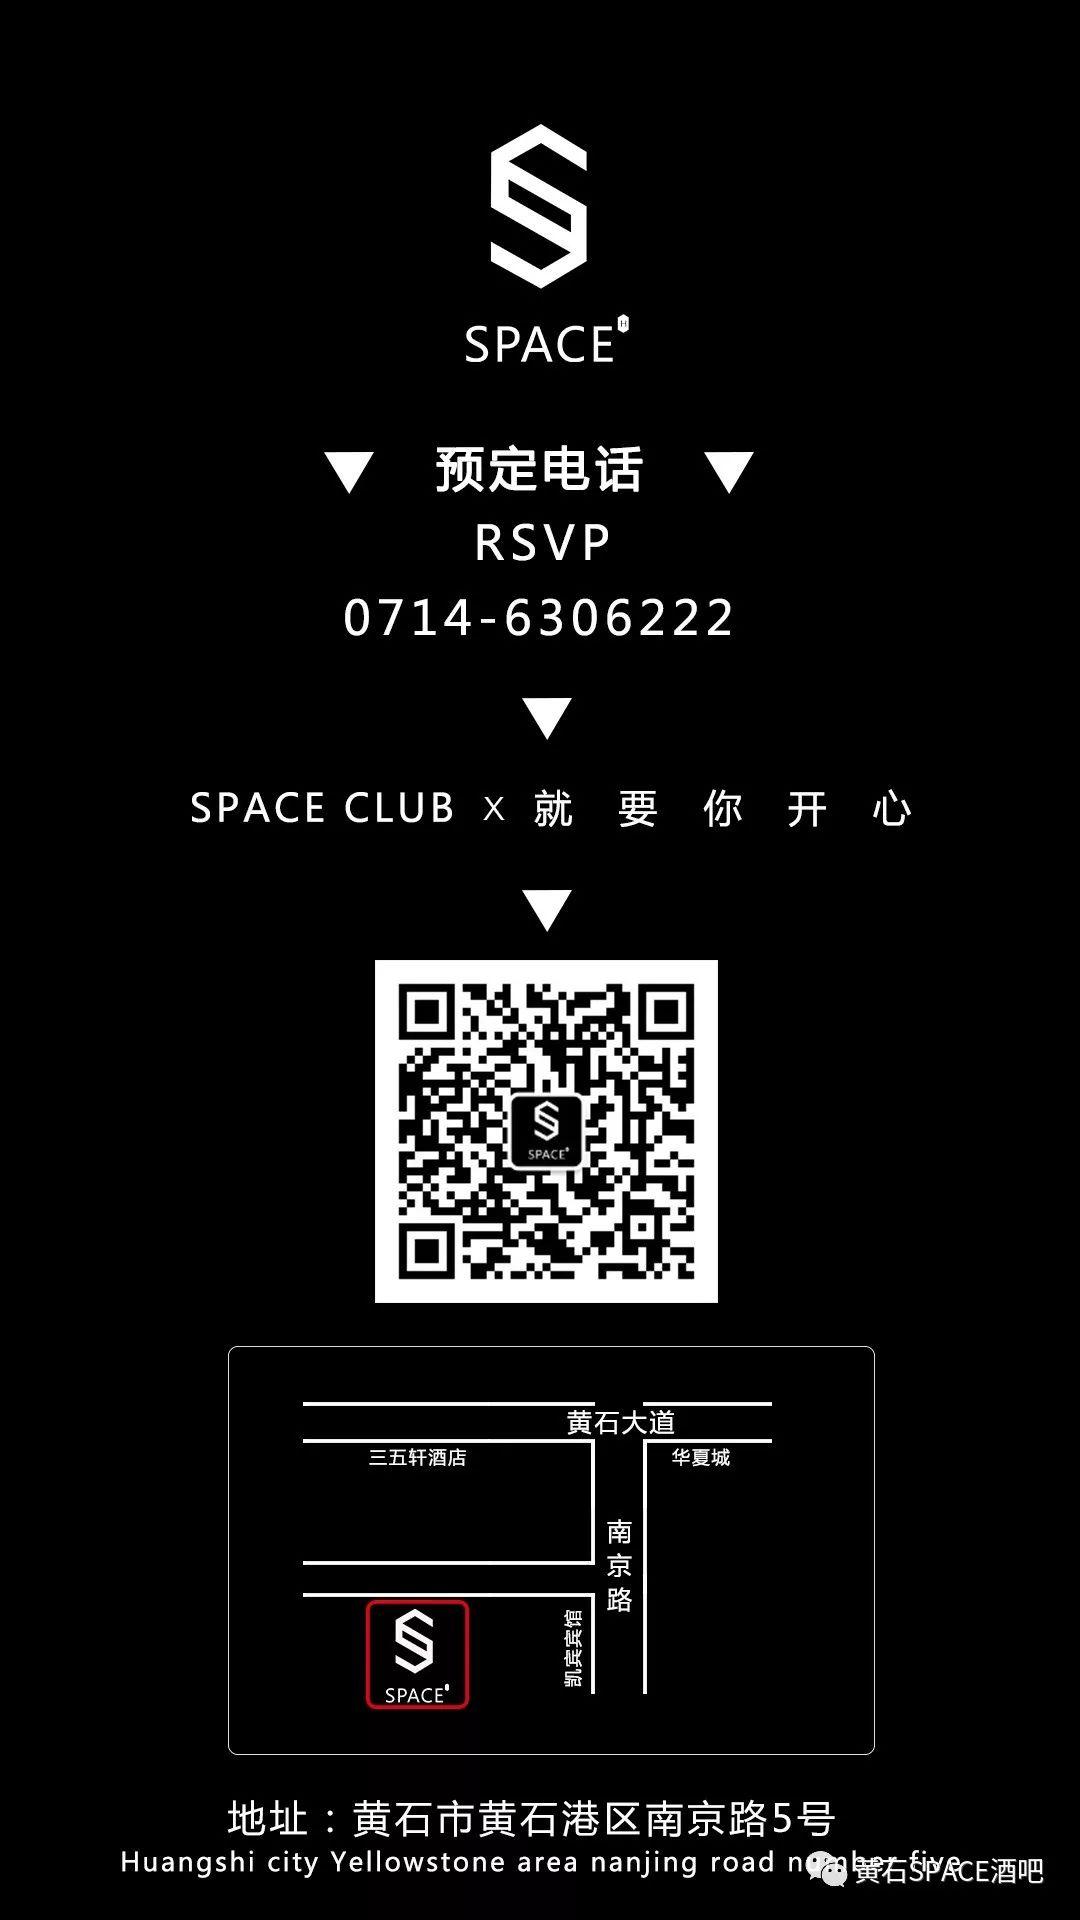 黄石斯贝斯酒吧/space酒吧/space club